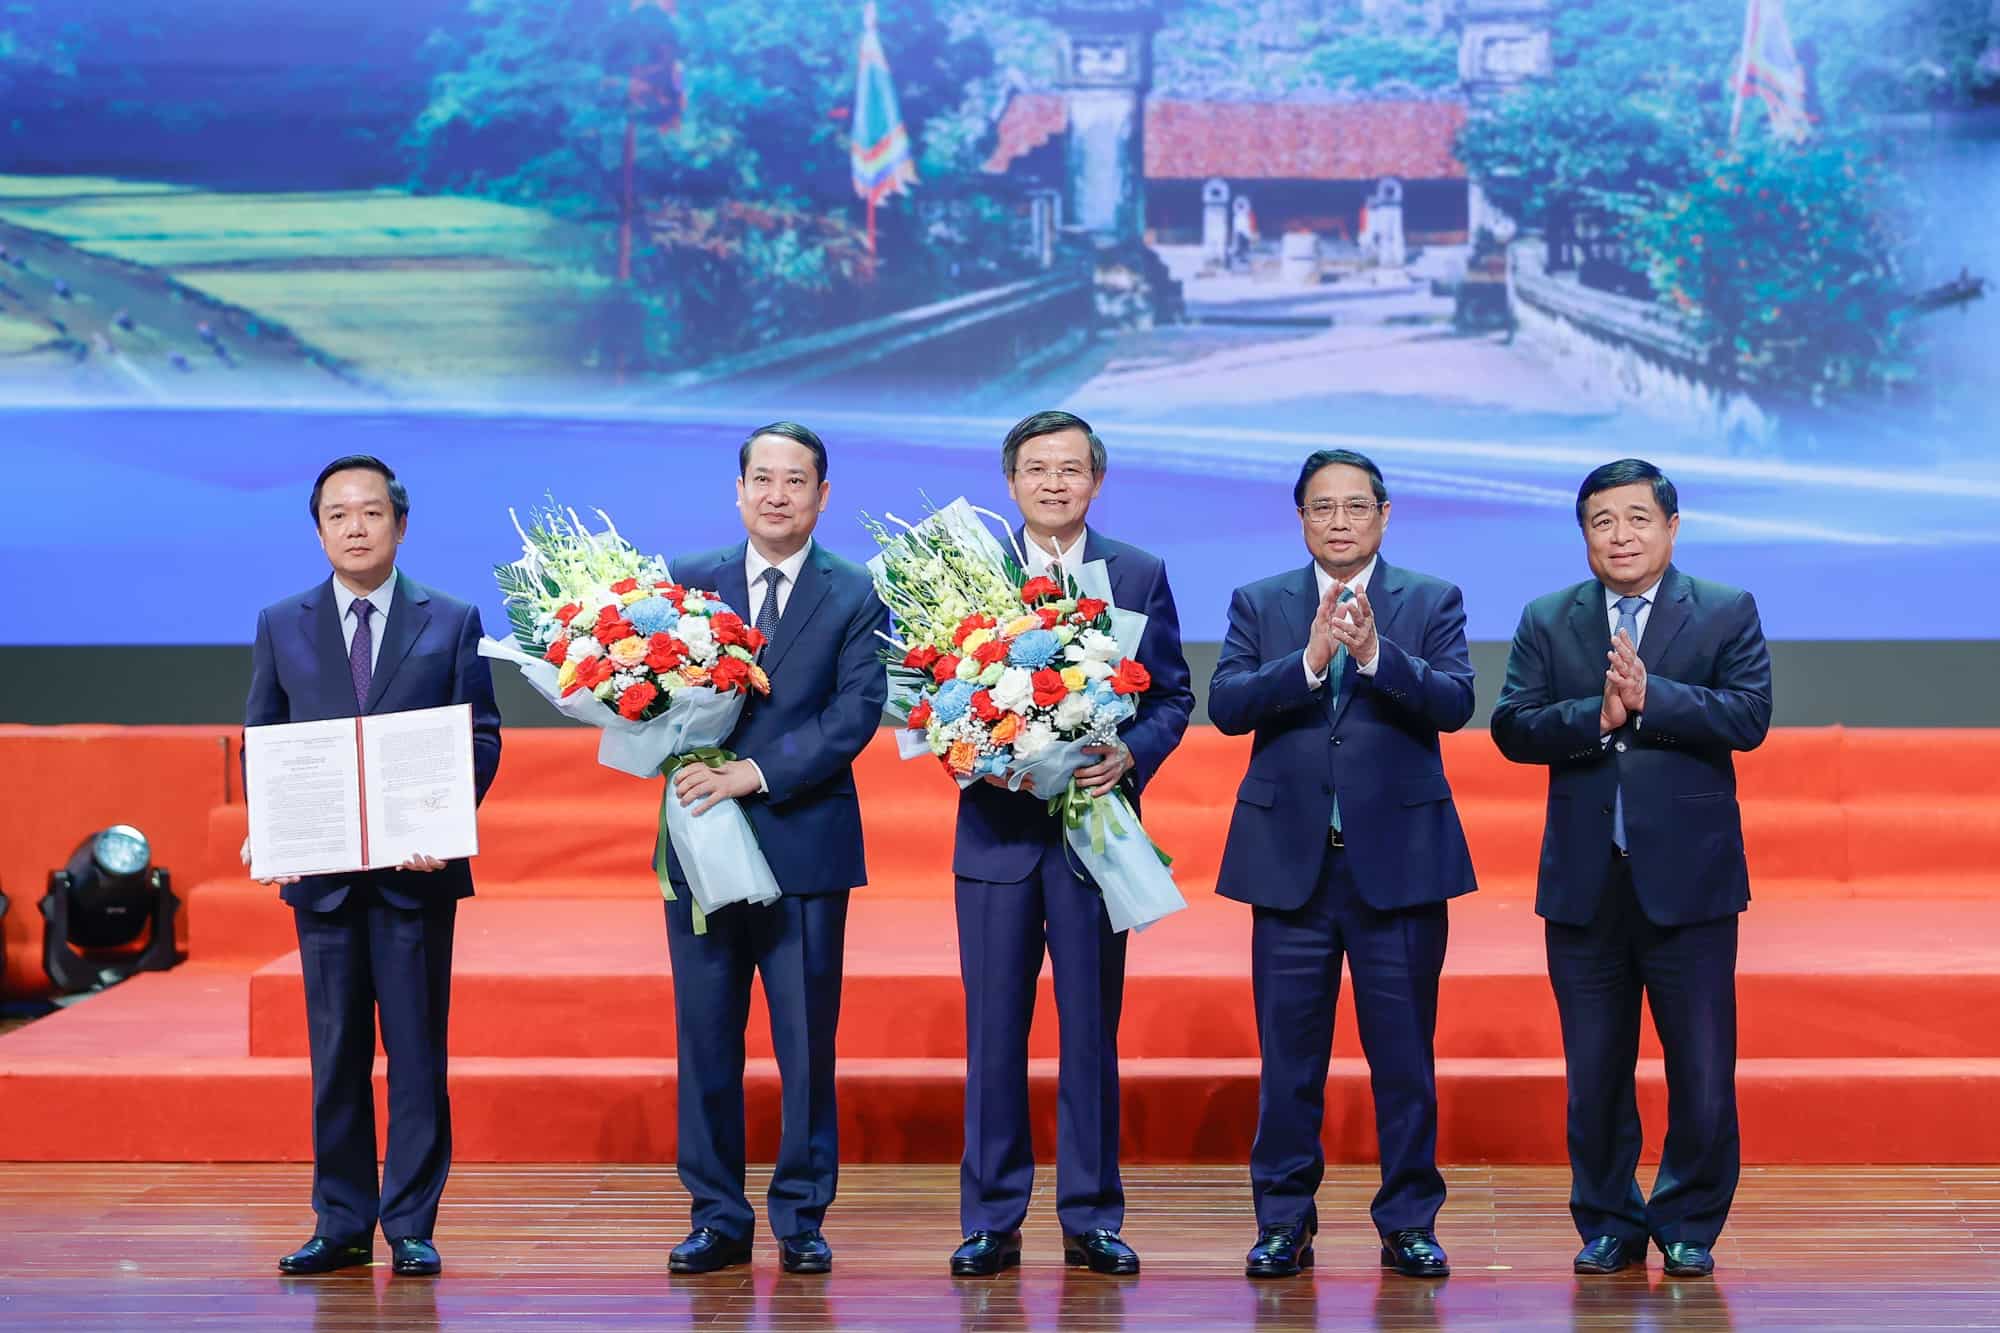 Thủ tướng Chính phủ Phạm Minh Chính và Bộ trưởng Bộ Kế hoạch và Đầu tư trao Quyết định công bố quy hoạch tỉnh Ninh Bình thời kỳ 2021 - 2030 tầm nhìn đến năm 2050 cho lãnh đạo tỉnh Ninh Bình. Ảnh: Nguyễn Hải